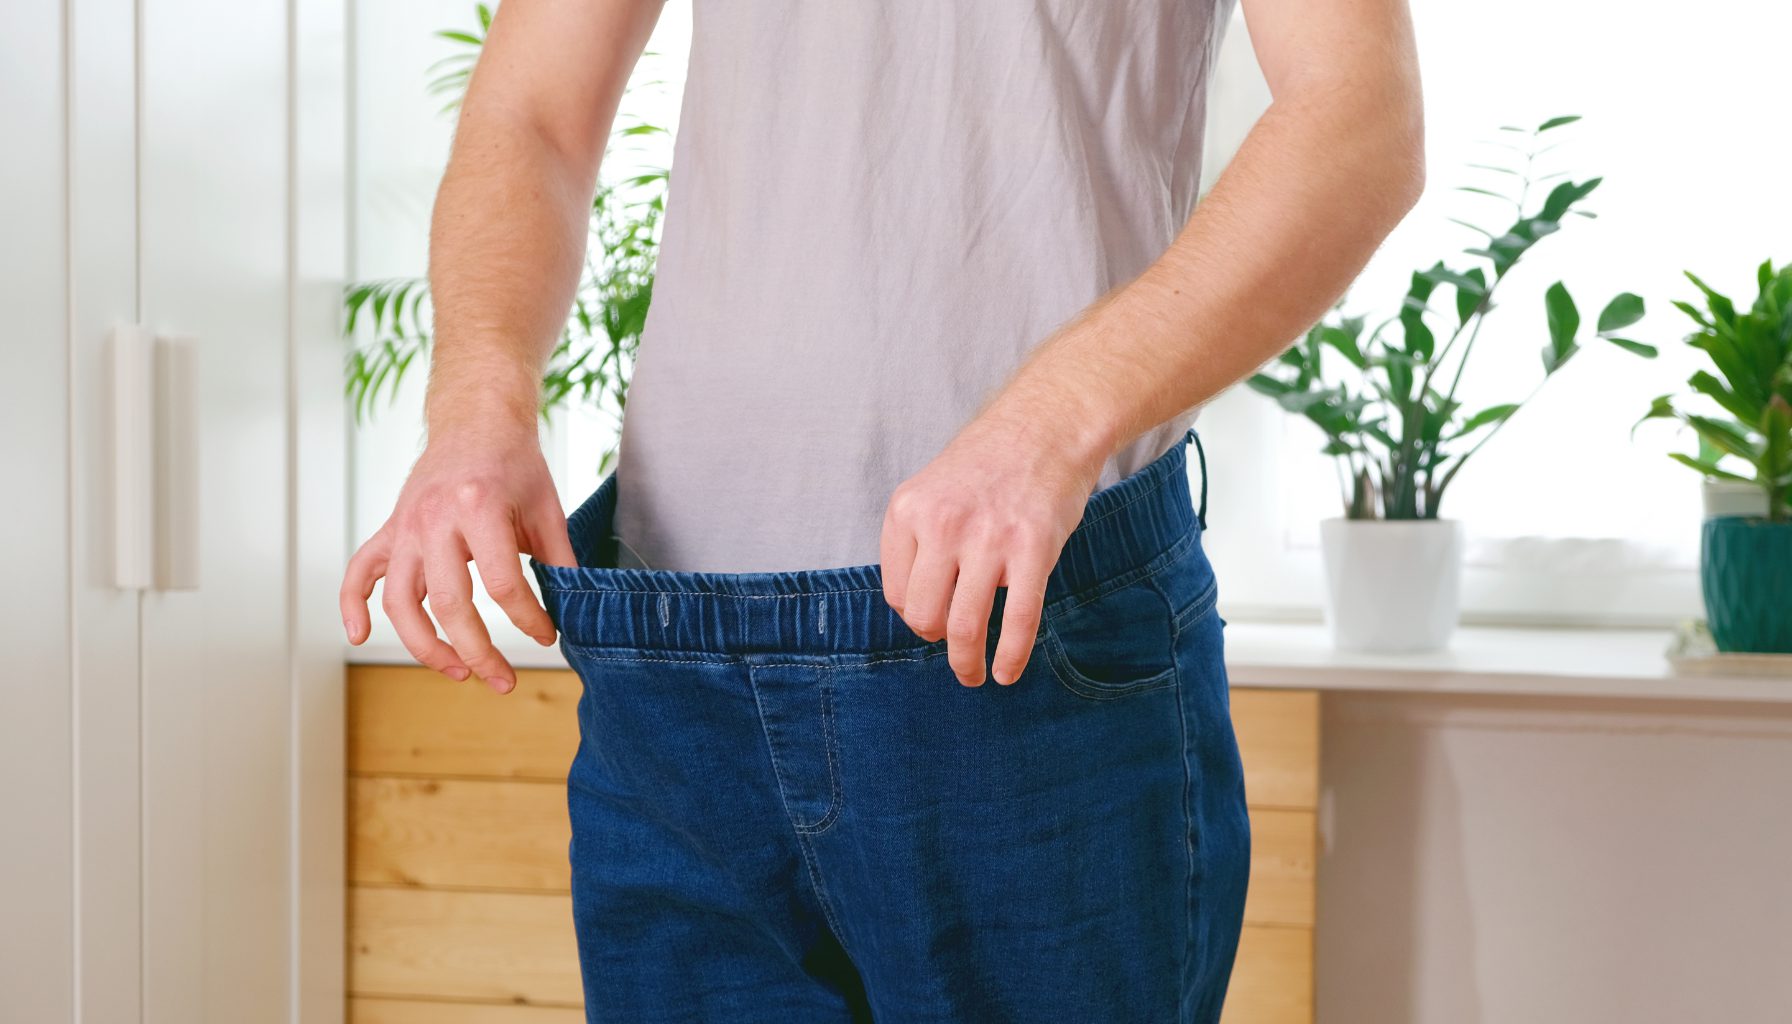 Ukuran Celana Pria Menurut Berat Badan